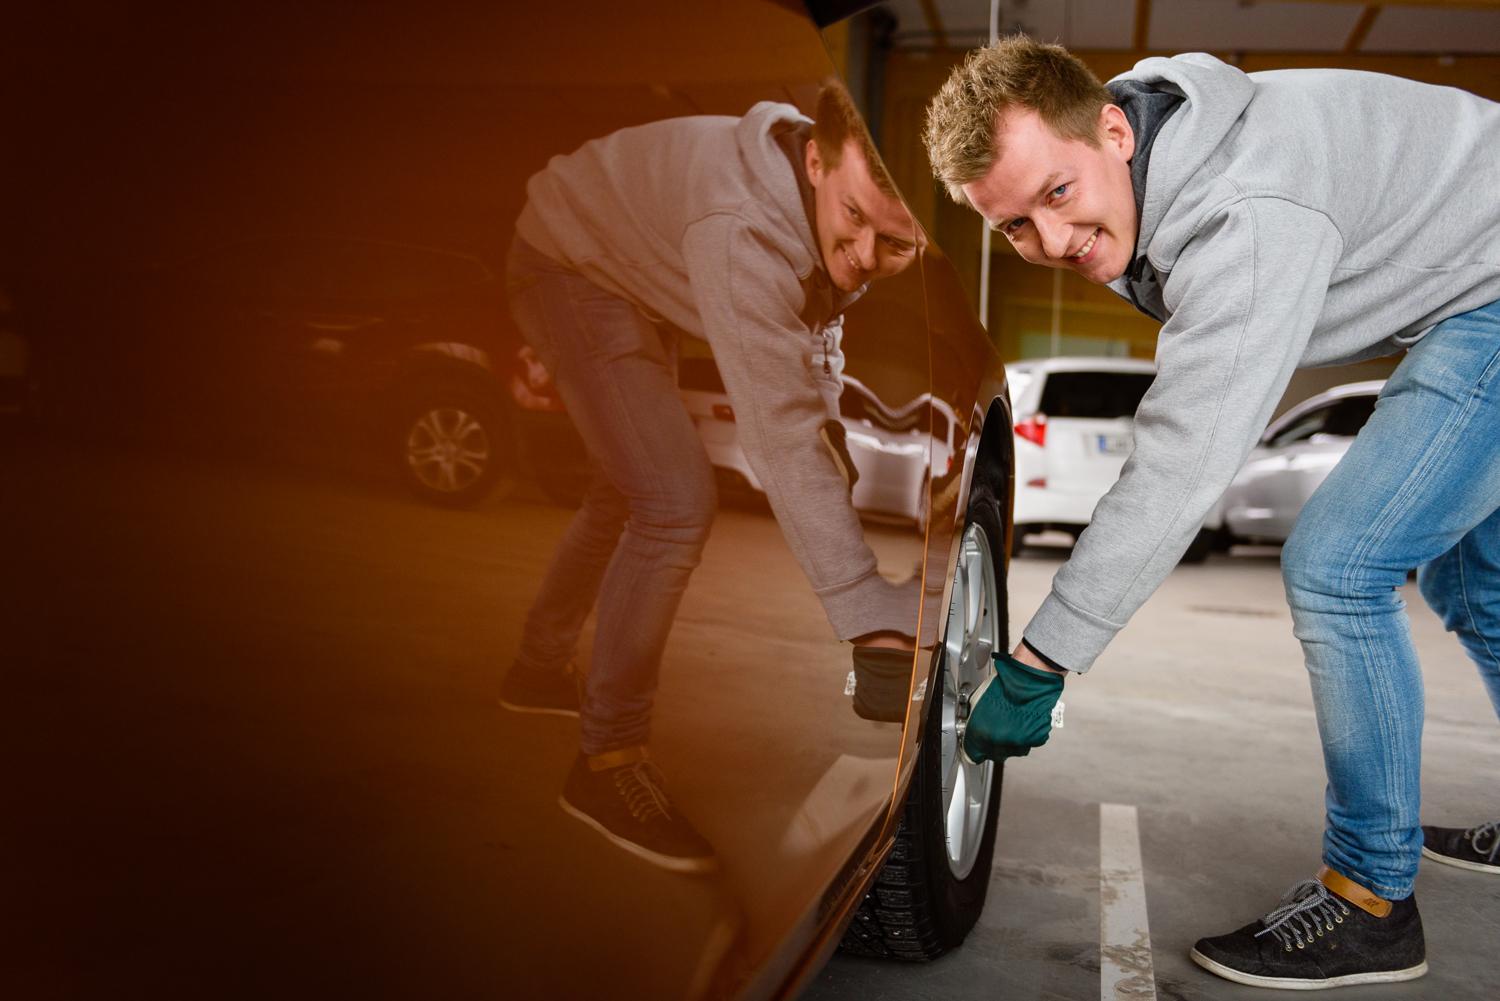 Auton puhdistaminen on ennen kaikkea turvallisuusteko – Nämä kannattaa ottaa tavaksi